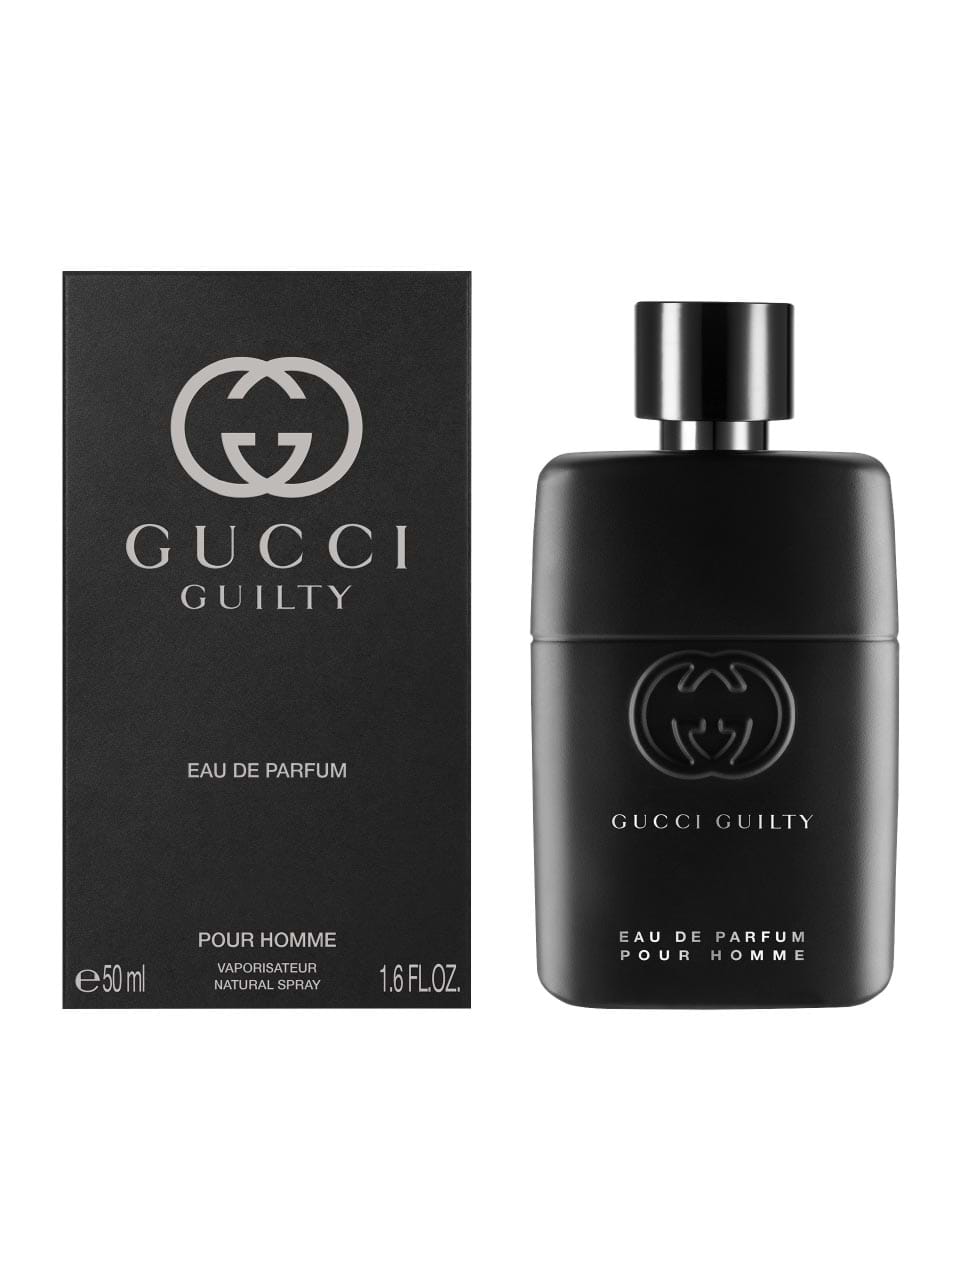 Cyclops frugthave pludselig Gucci - bestil lækker Gucci parfume i TAX FREE-butikken